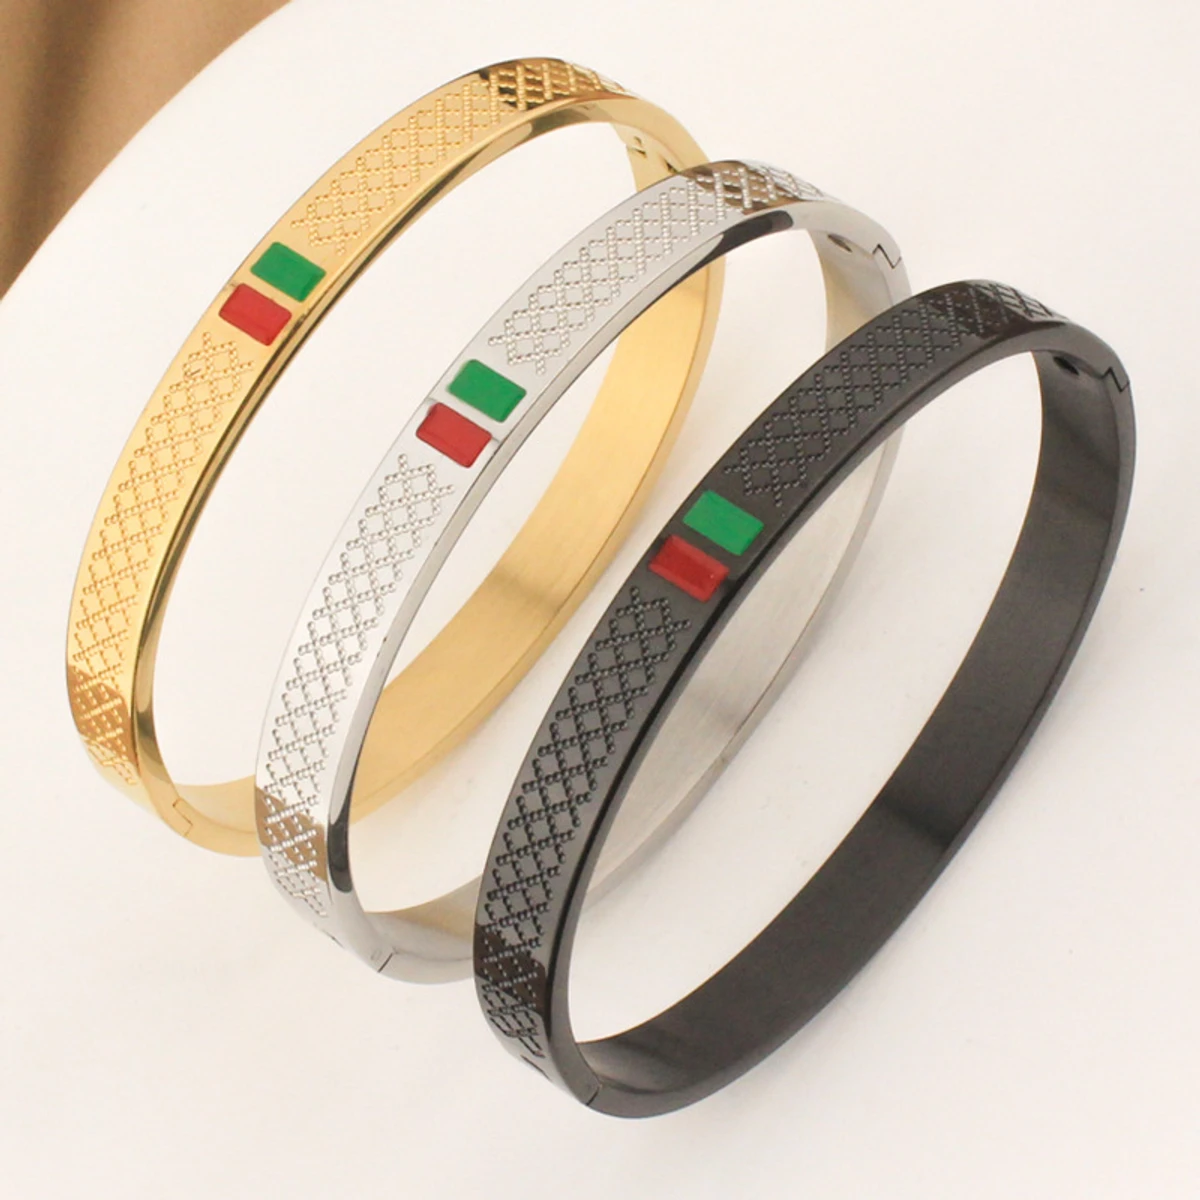 Stylish Round Gucchi Bracelet For Men